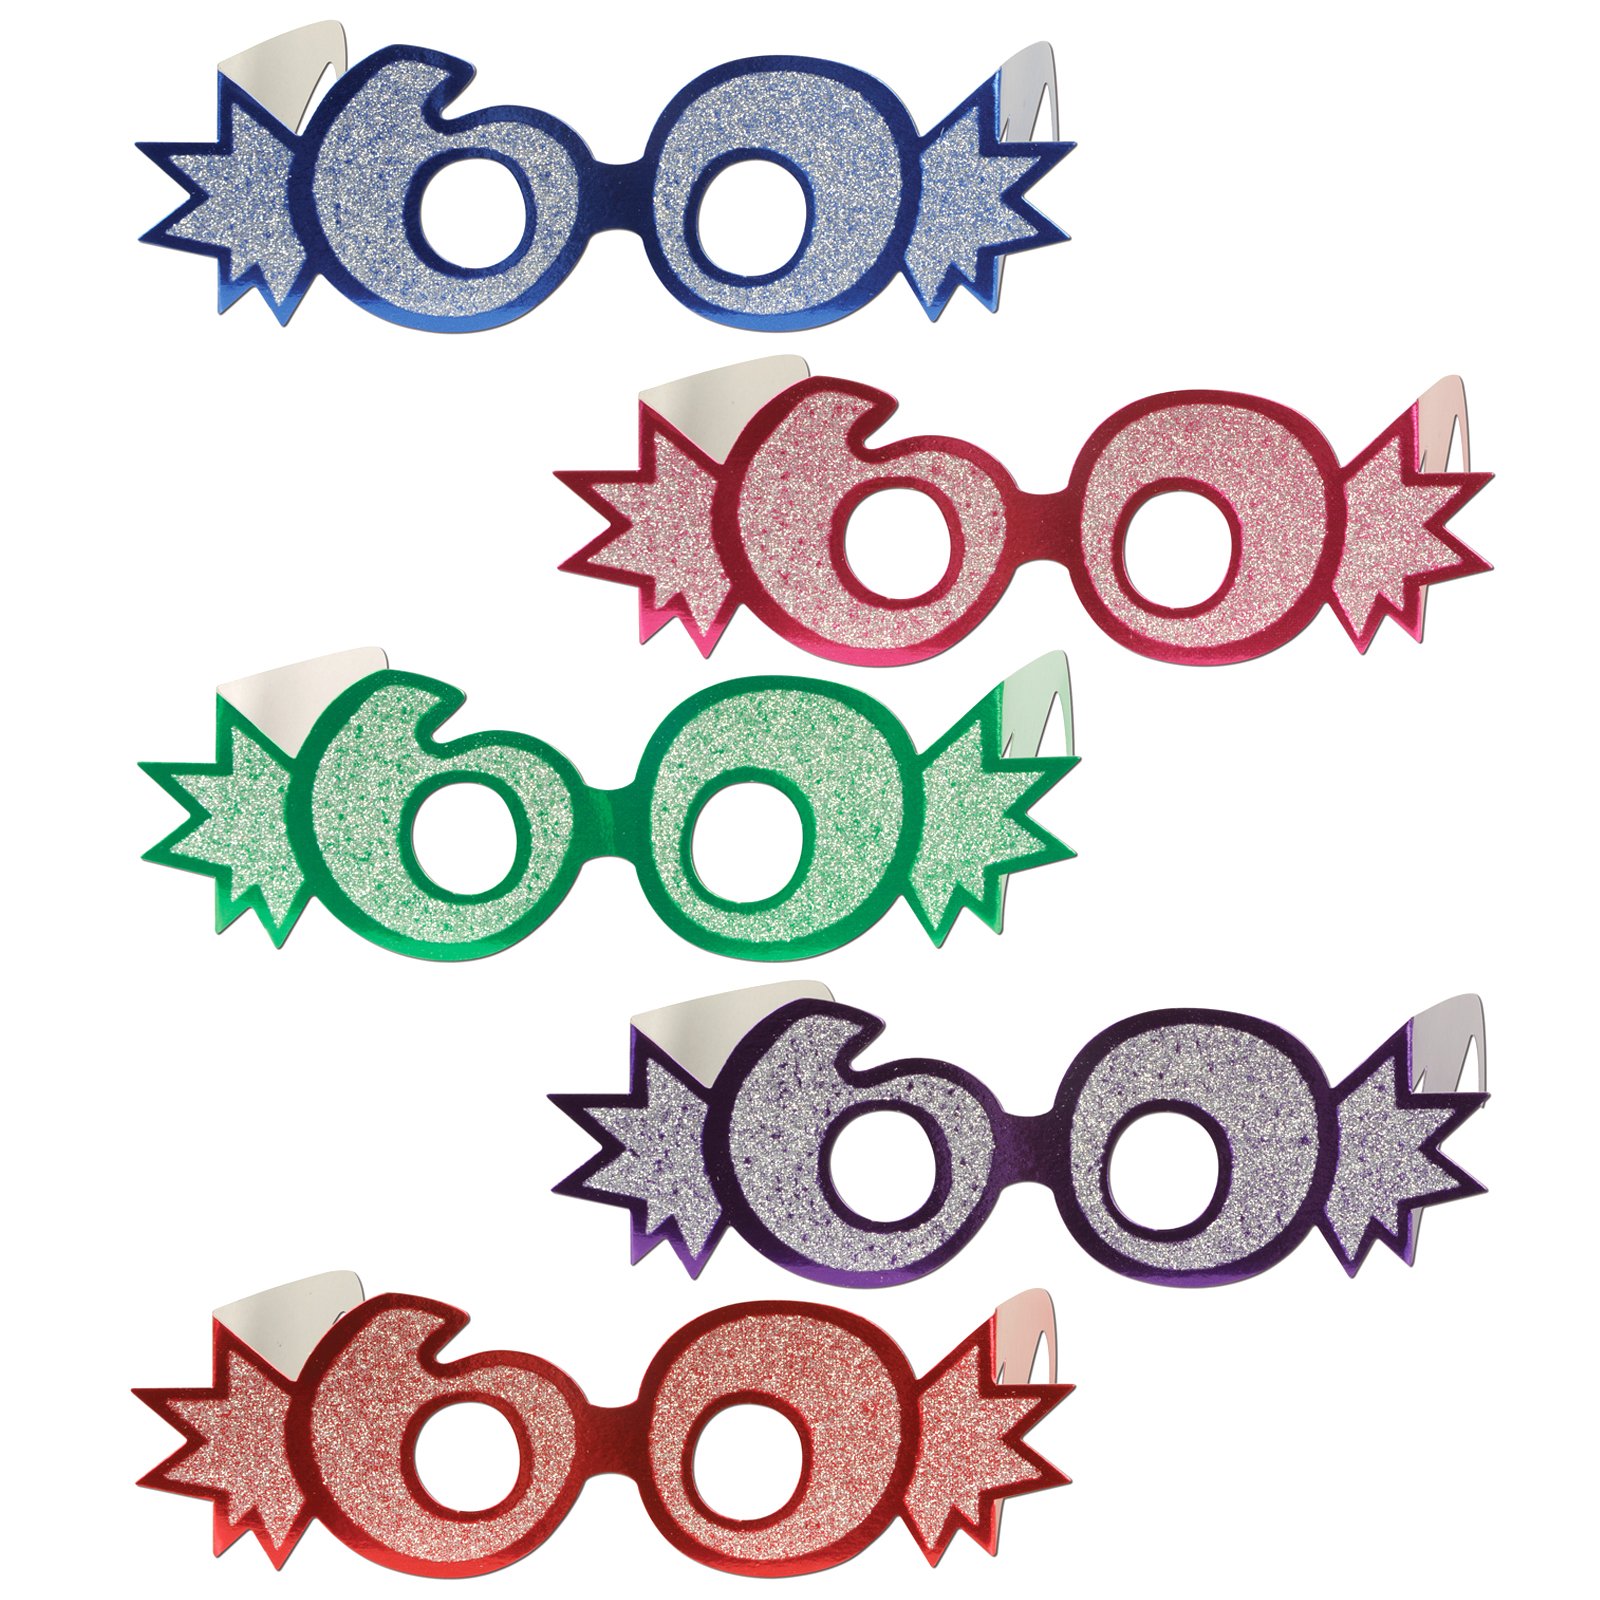 Glittered Foil Eyeglasses "60" Asst. (1 count)